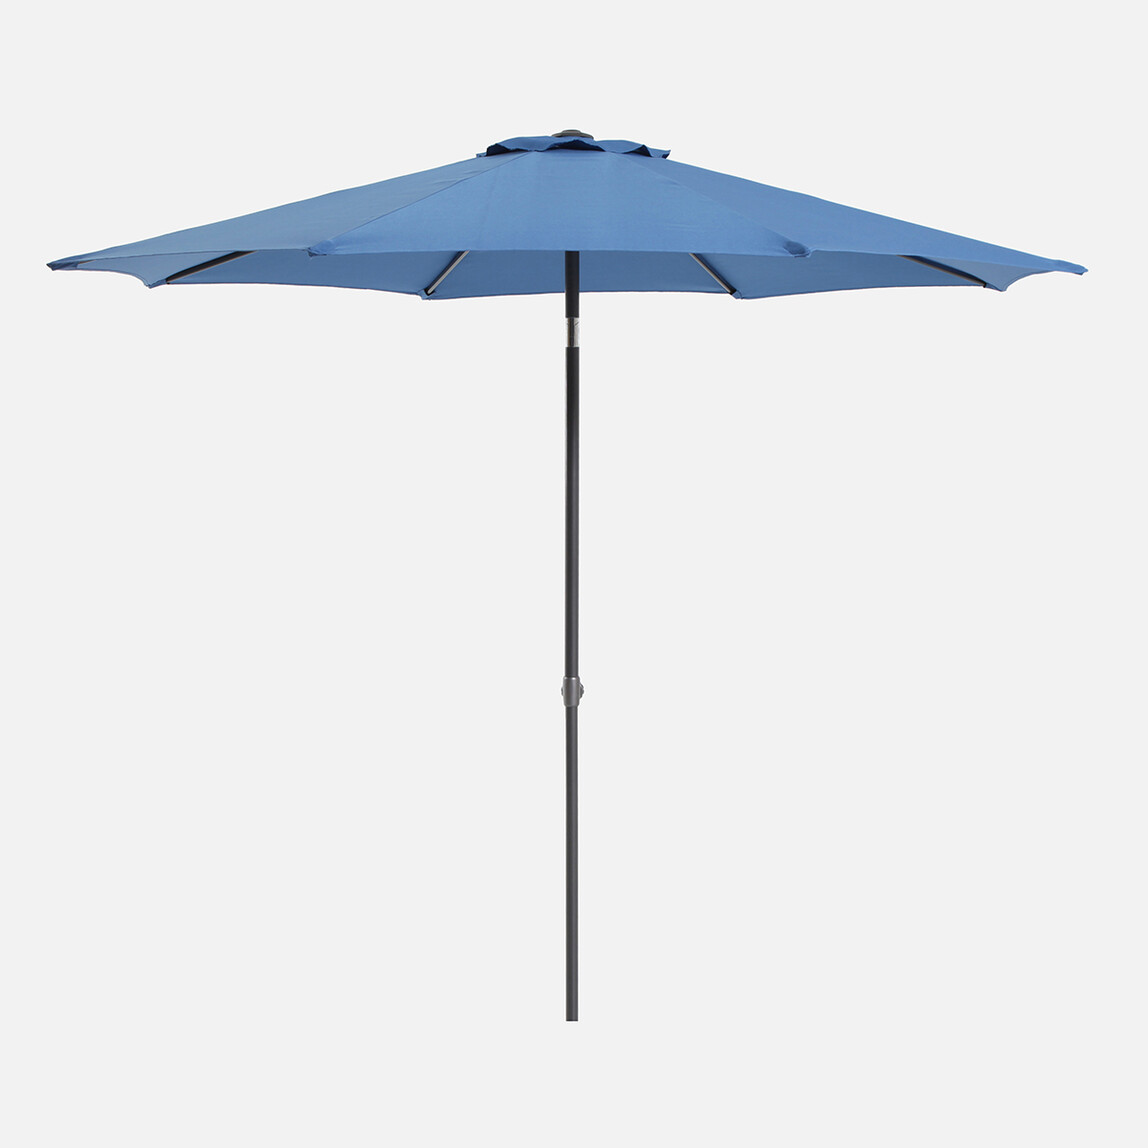    Sunfun Torino Şemsiye Mavi 270 cm 